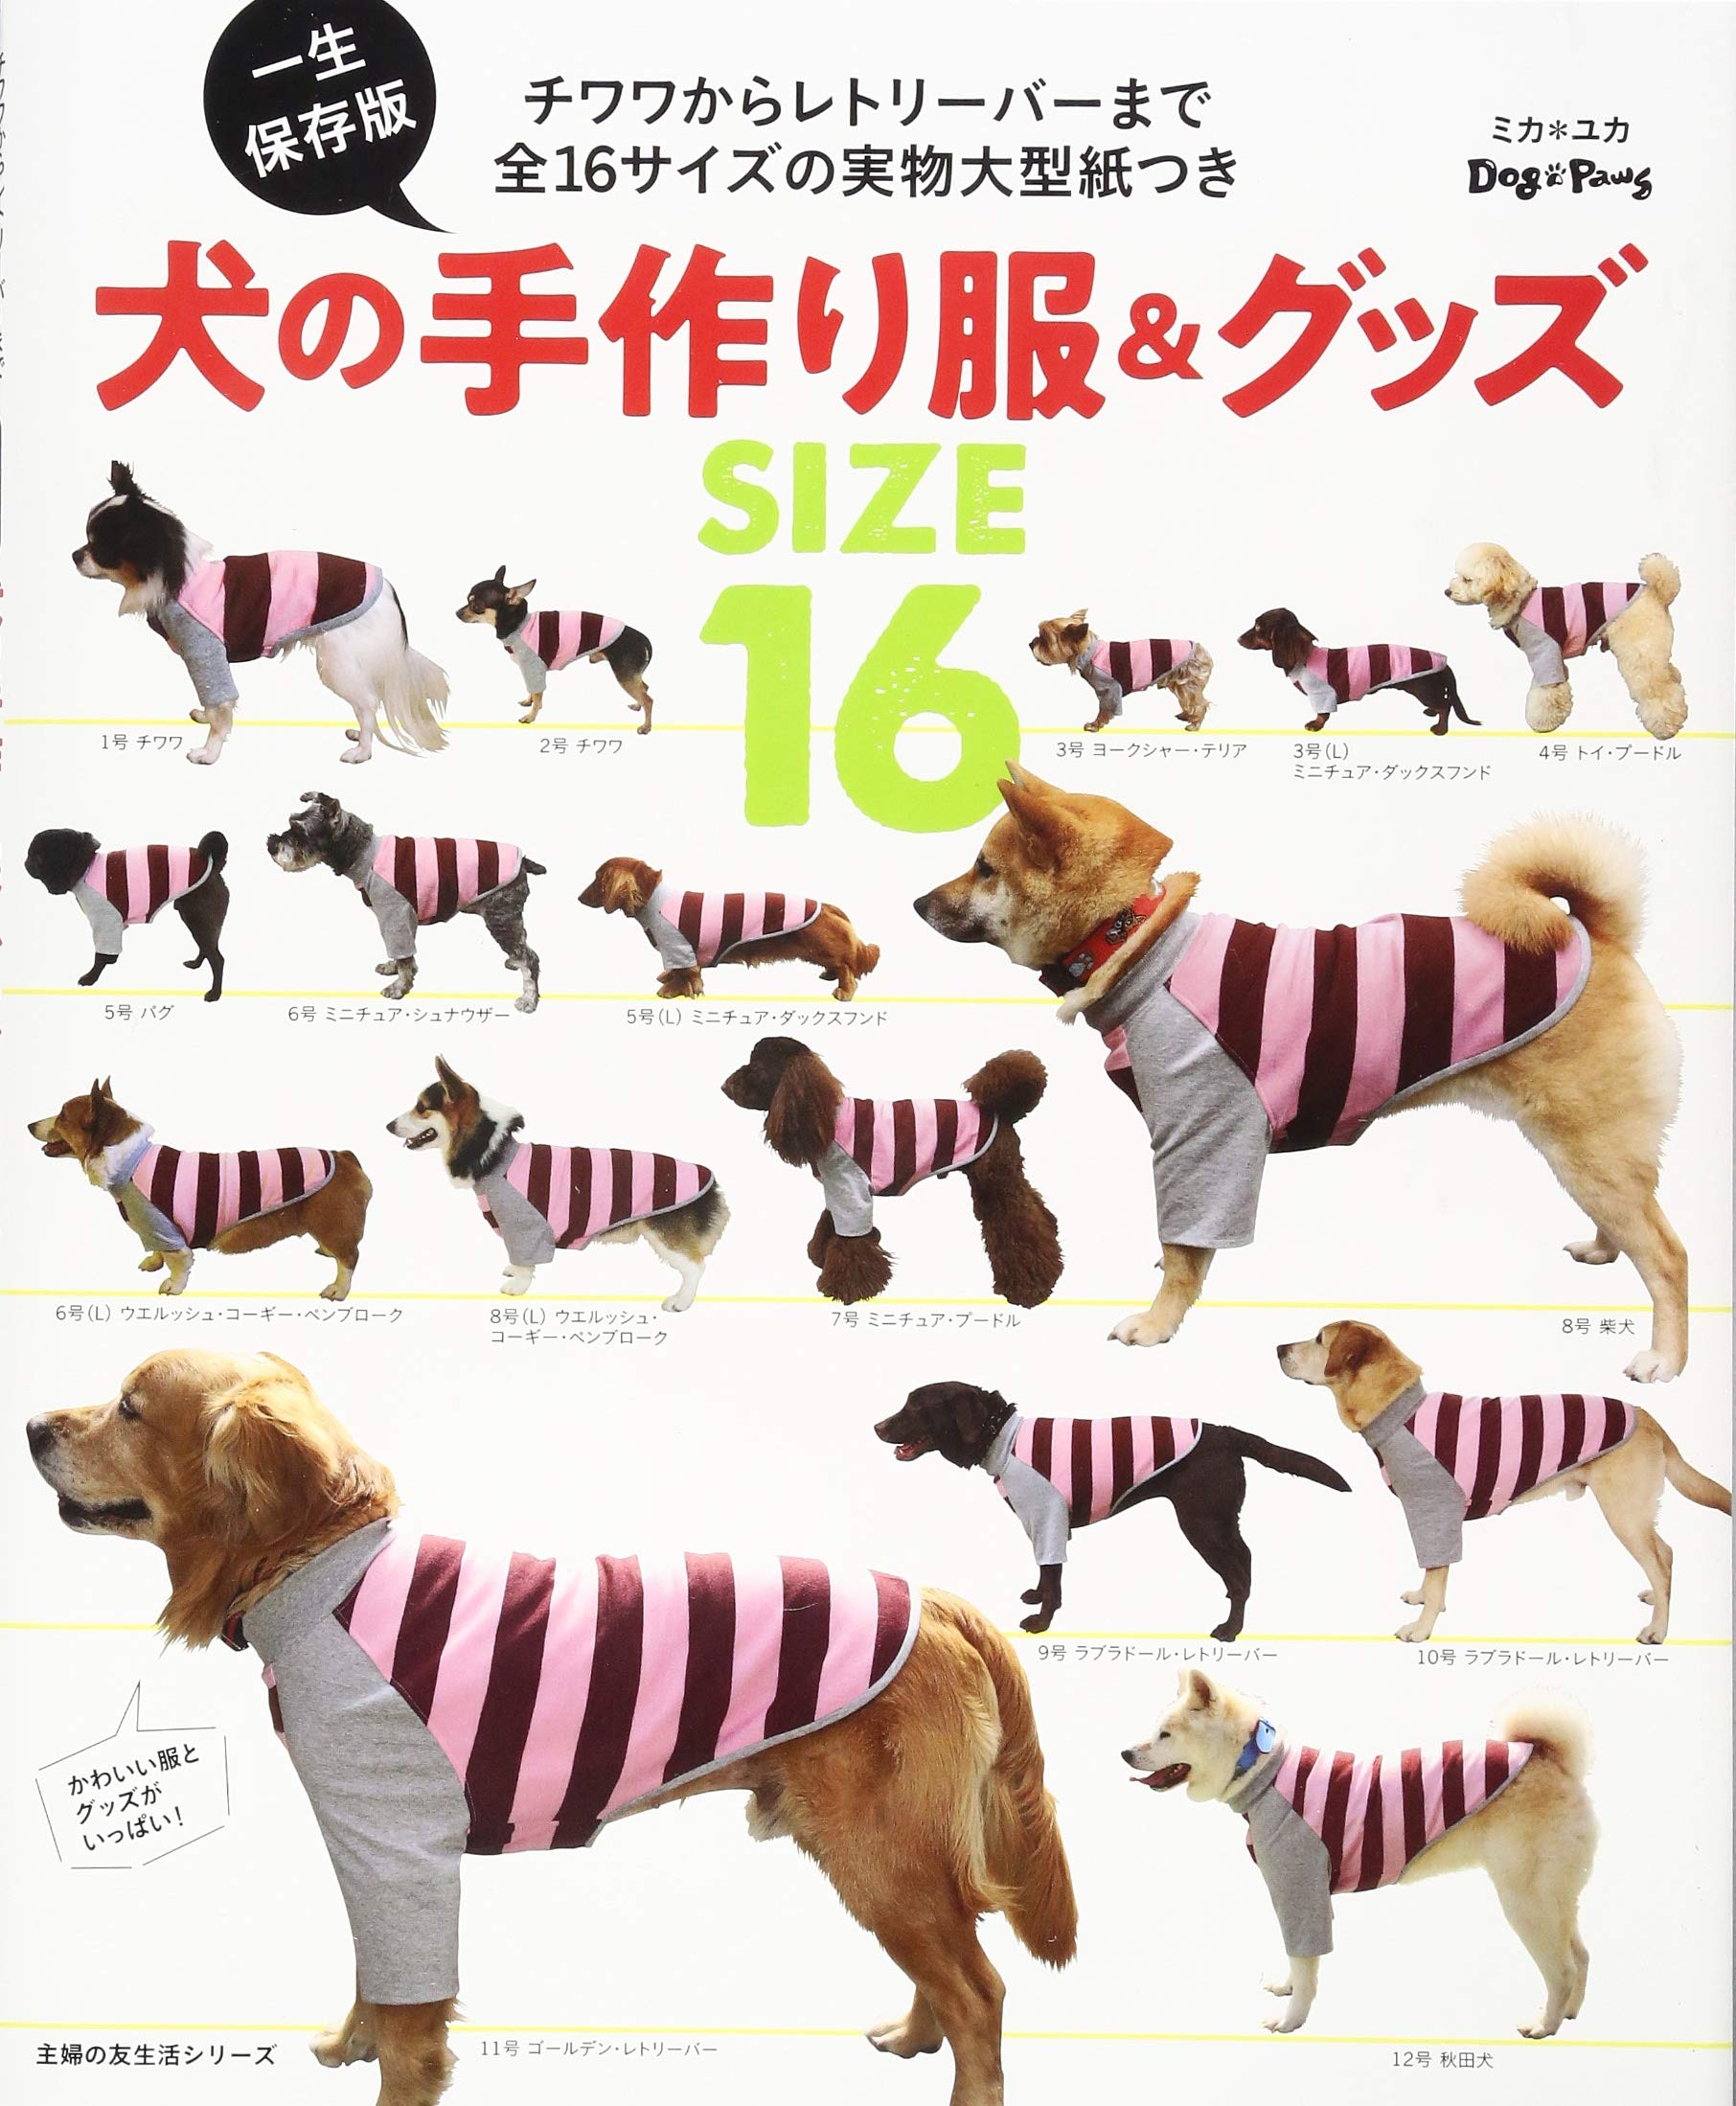 『一生保存版 犬の手作り服&グッズ』の表紙